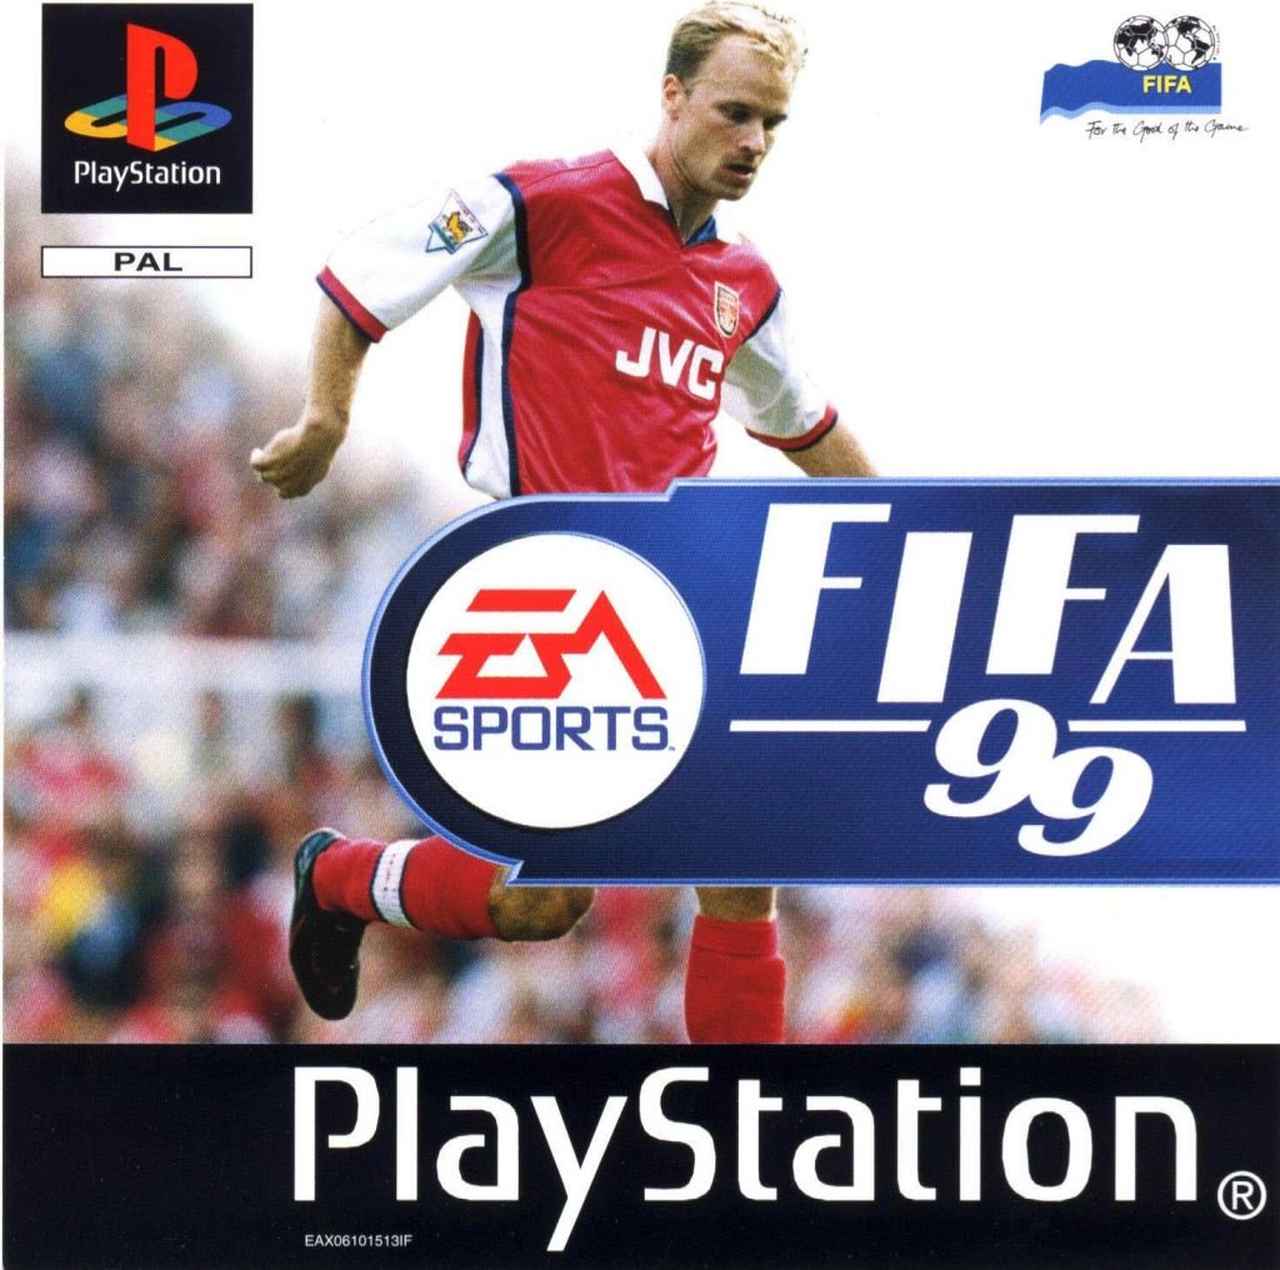 FIFA 99 -  A versão internacional do game trouxe o meia holandês Dennis Bergkamp na capa